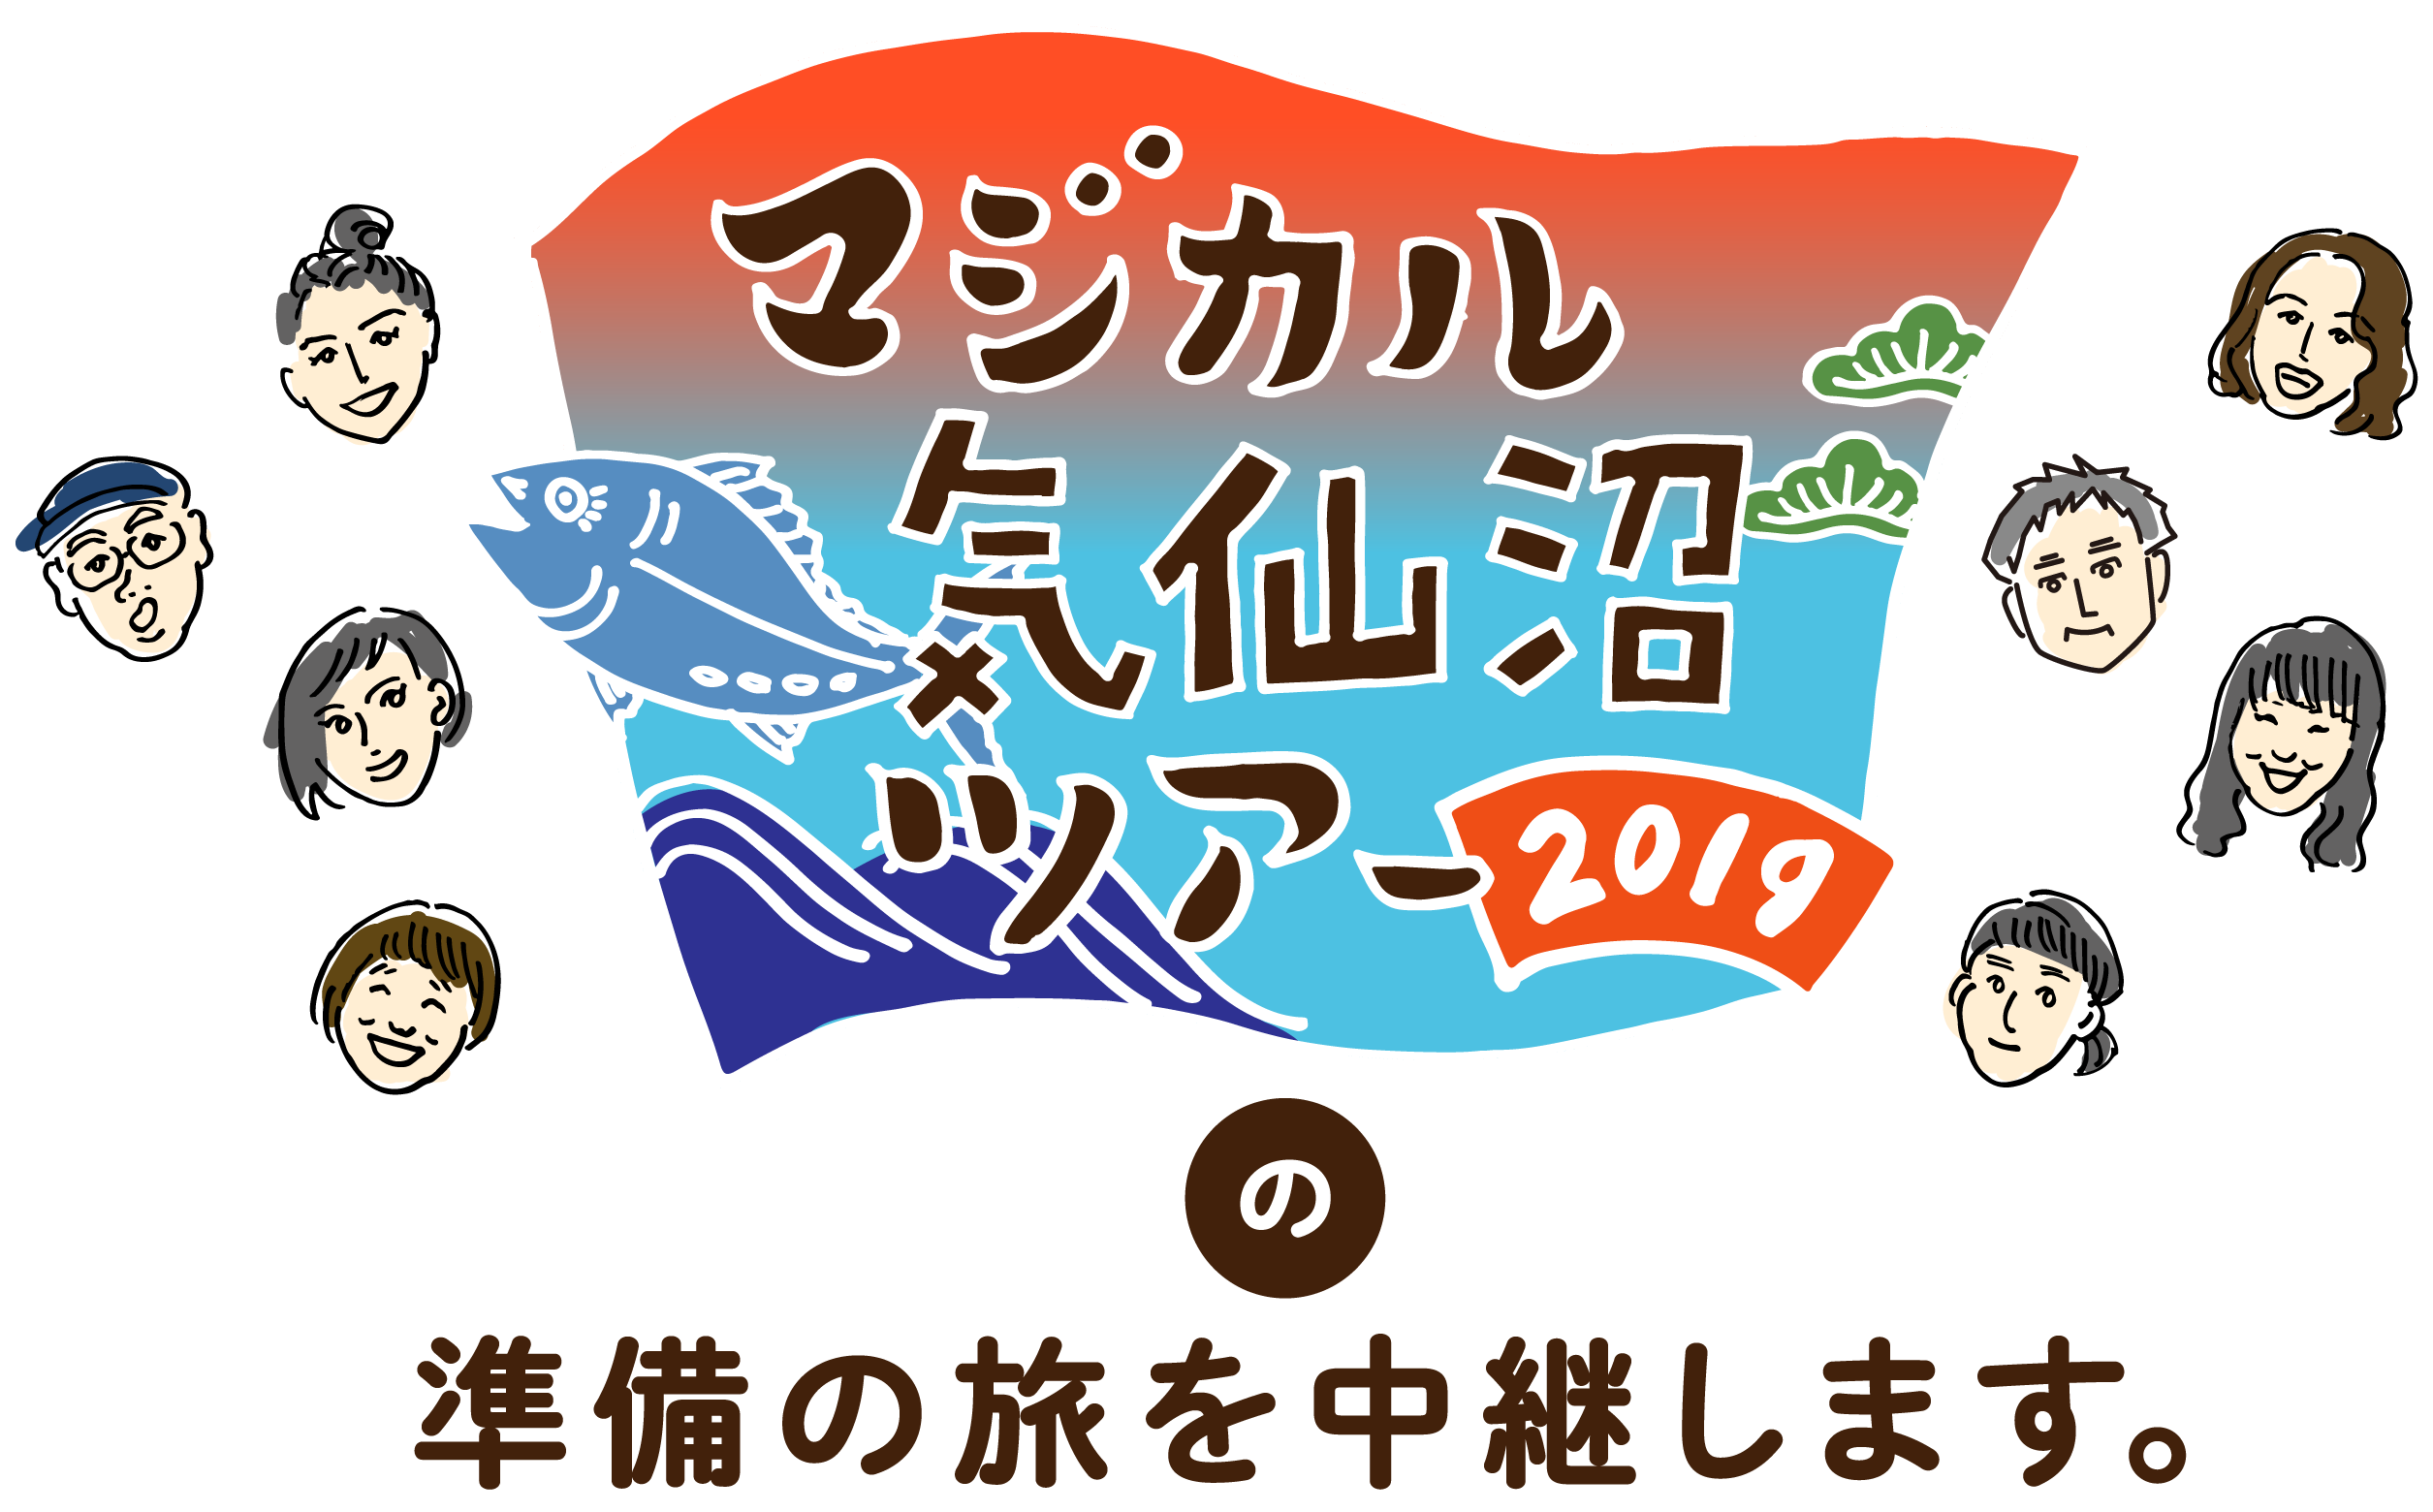 マジカル気仙沼ツアー2019の準備の旅を中継します。